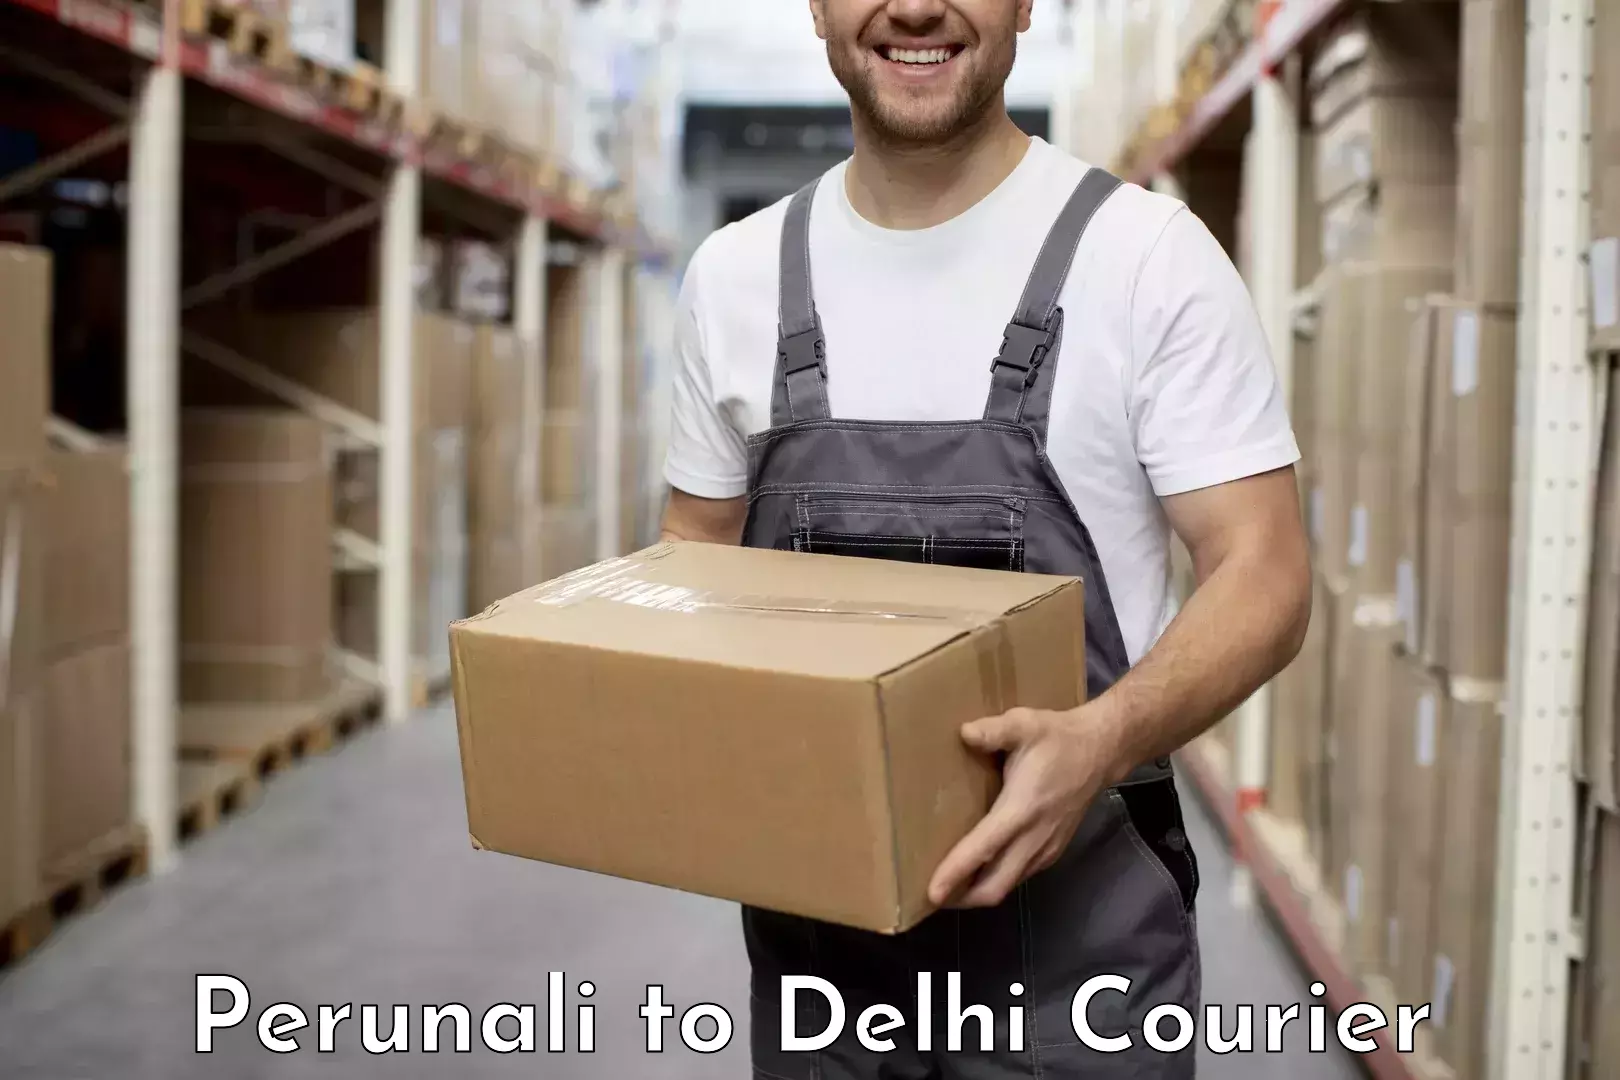 Overnight delivery services Perunali to IIT Delhi